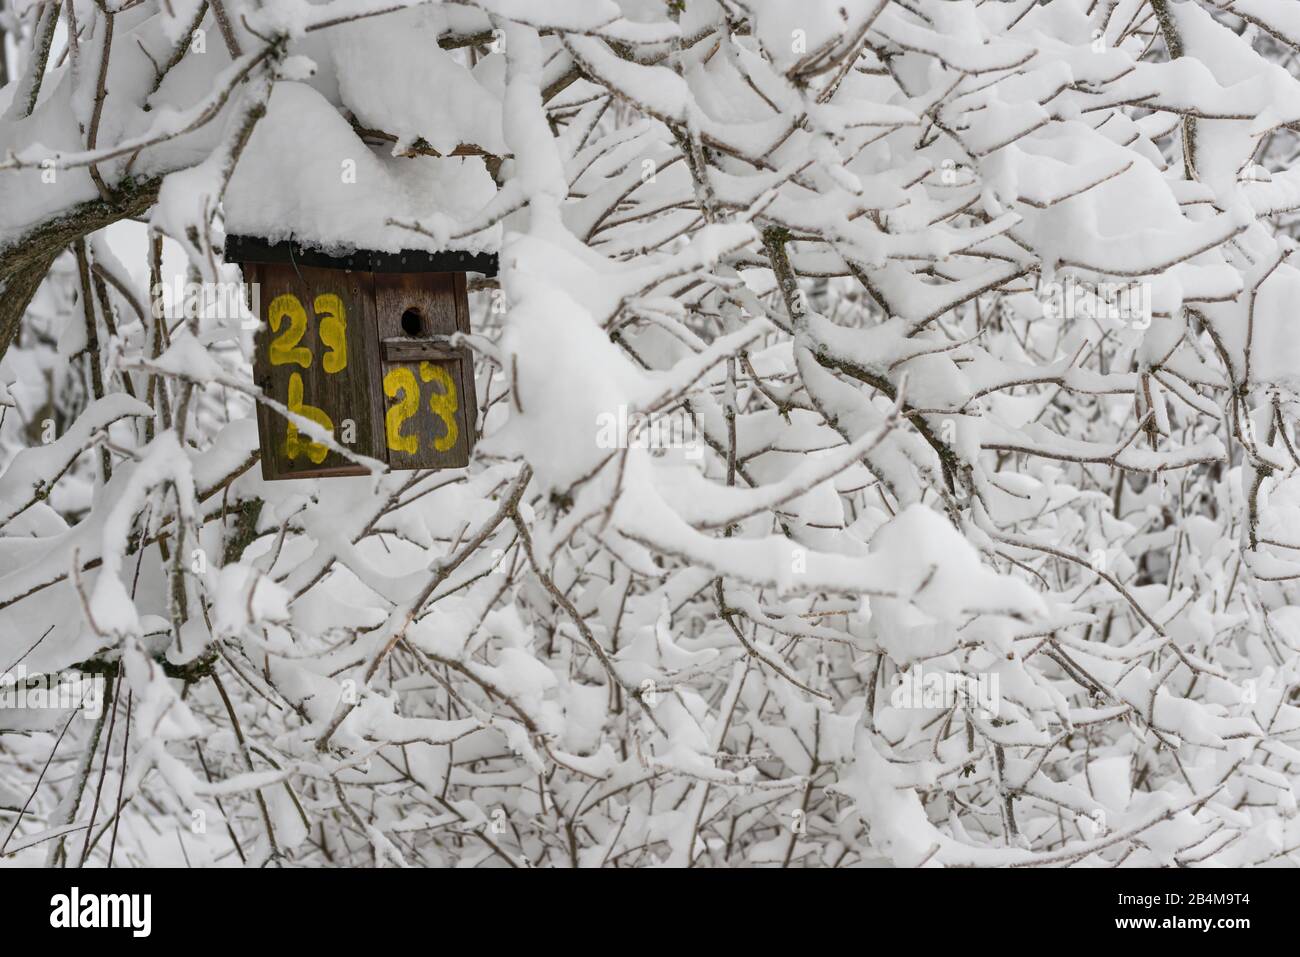 Alemania, Baden-Wuerttemberg, Alb Suabia, Hülben, caja de aves y arbustos cubiertos de nieve Foto de stock